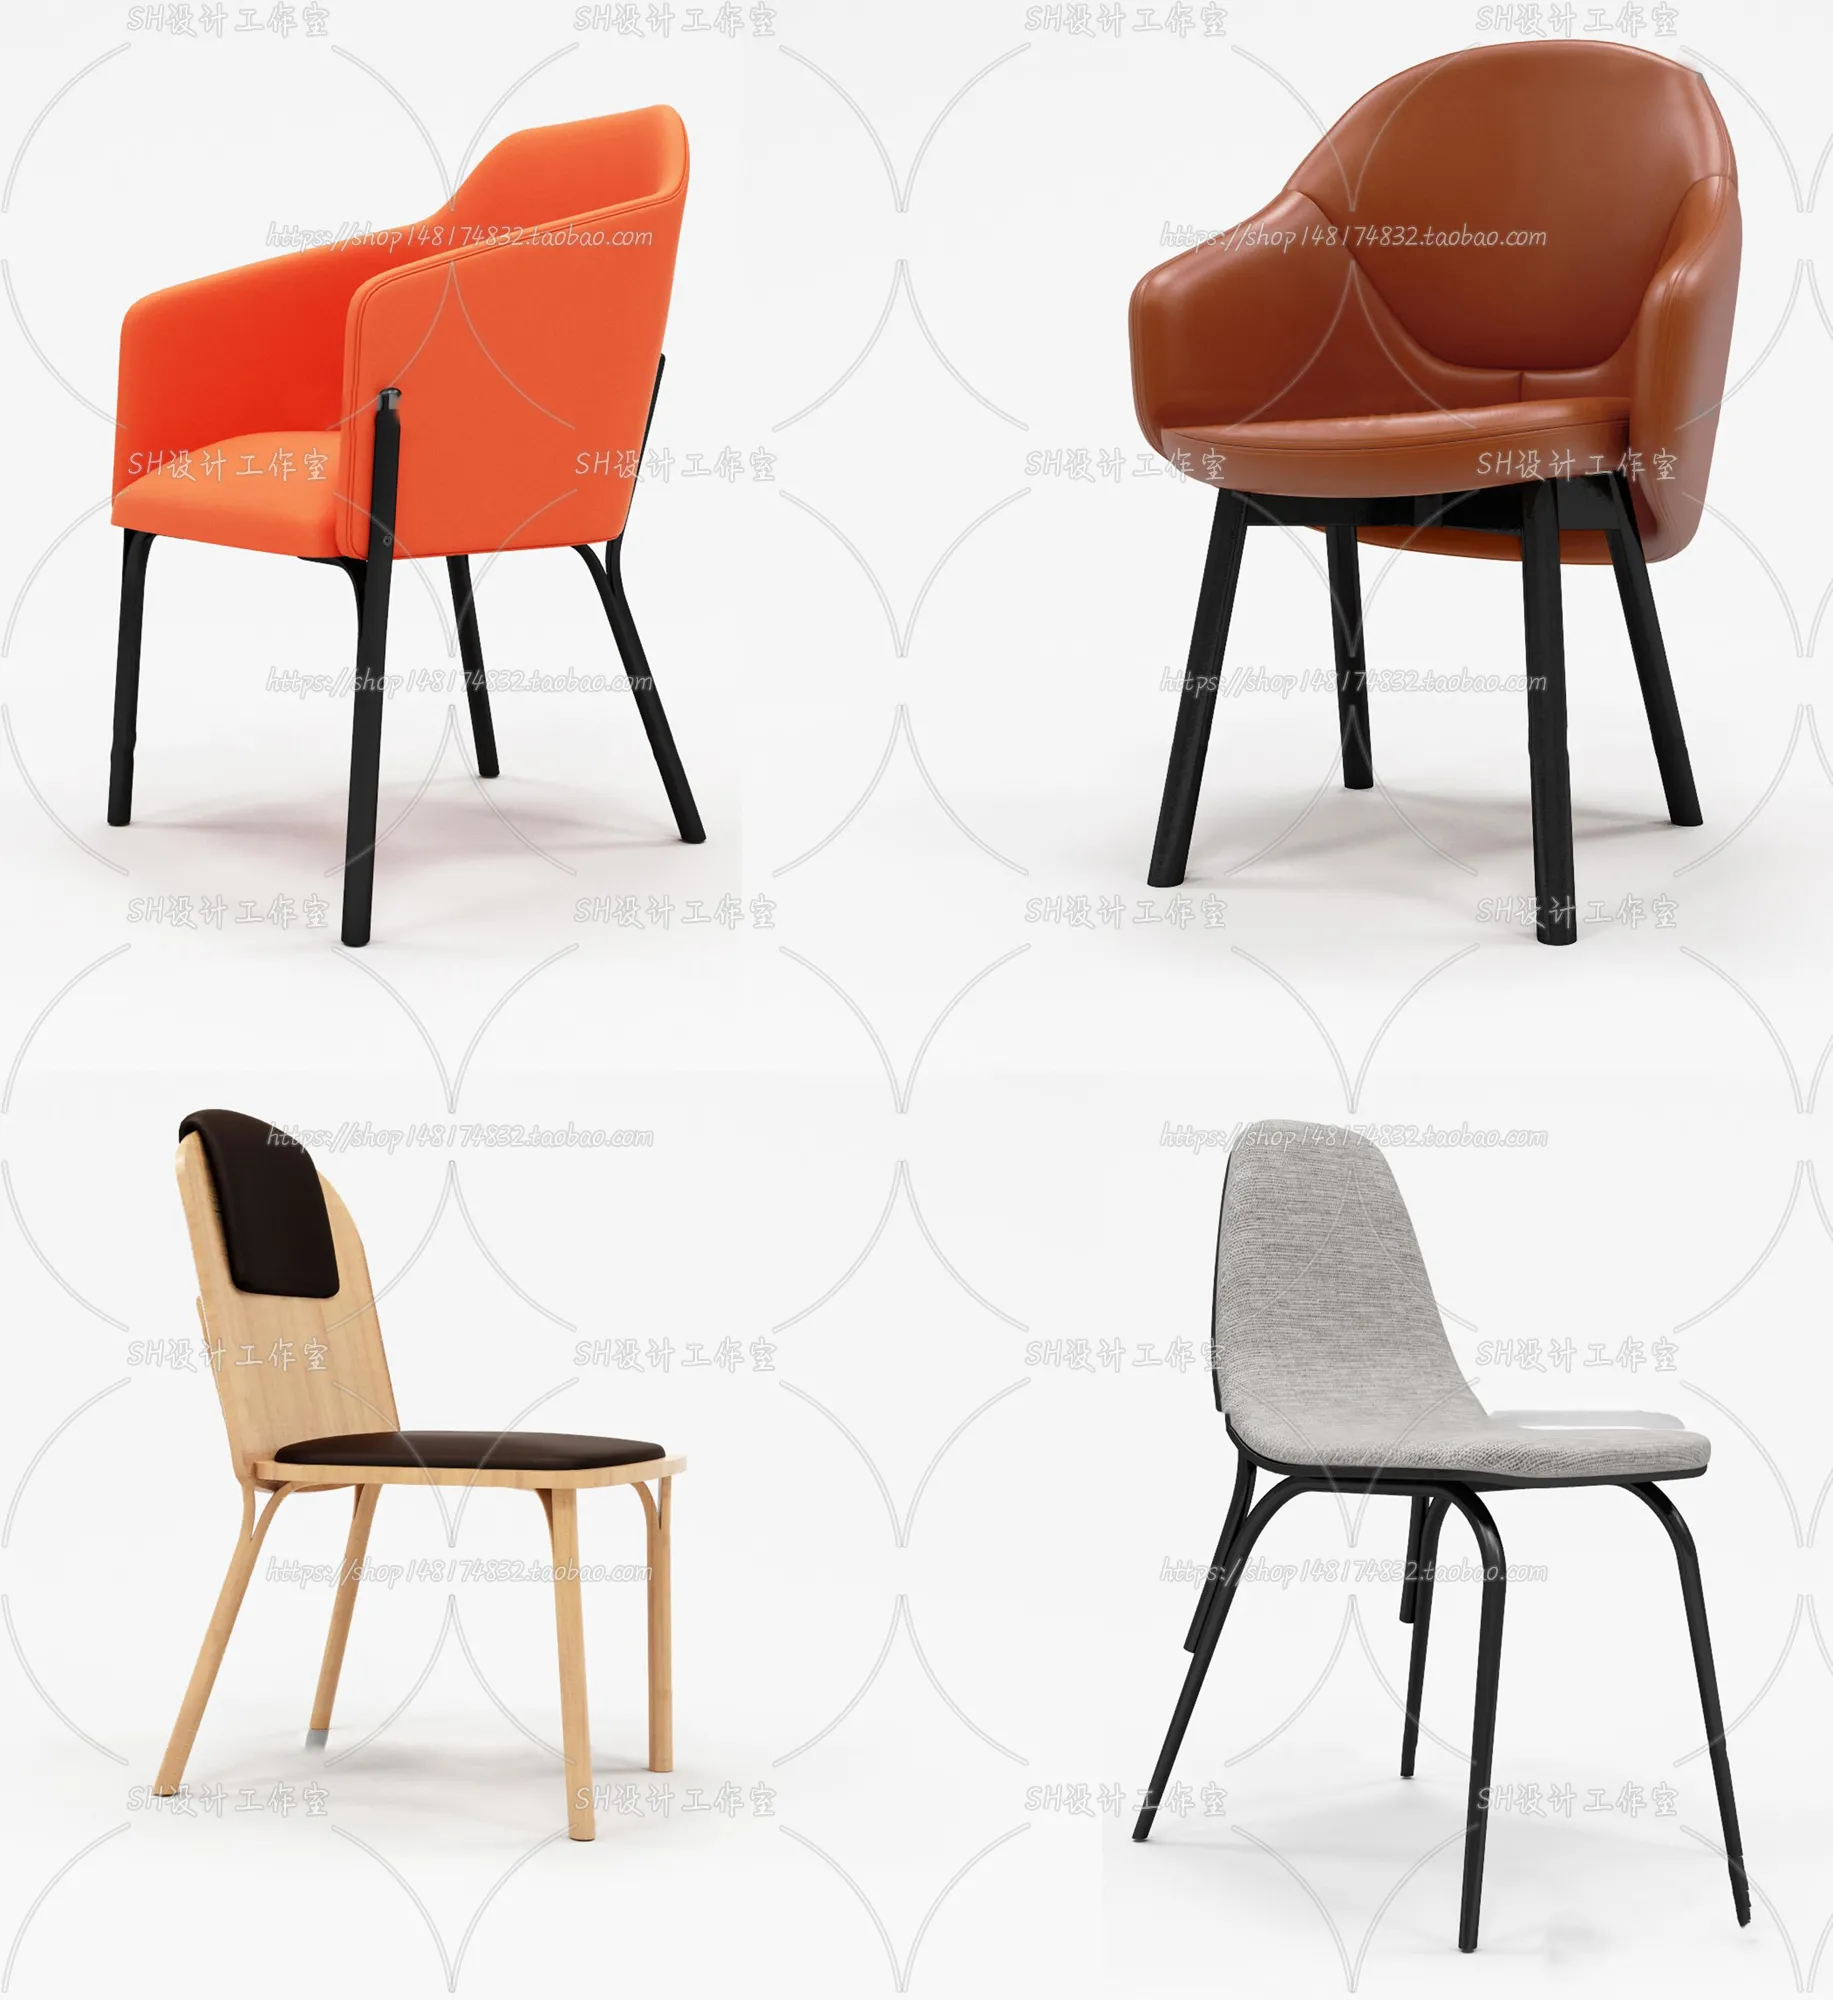 Chair – Single Chair 3D Models – 1988